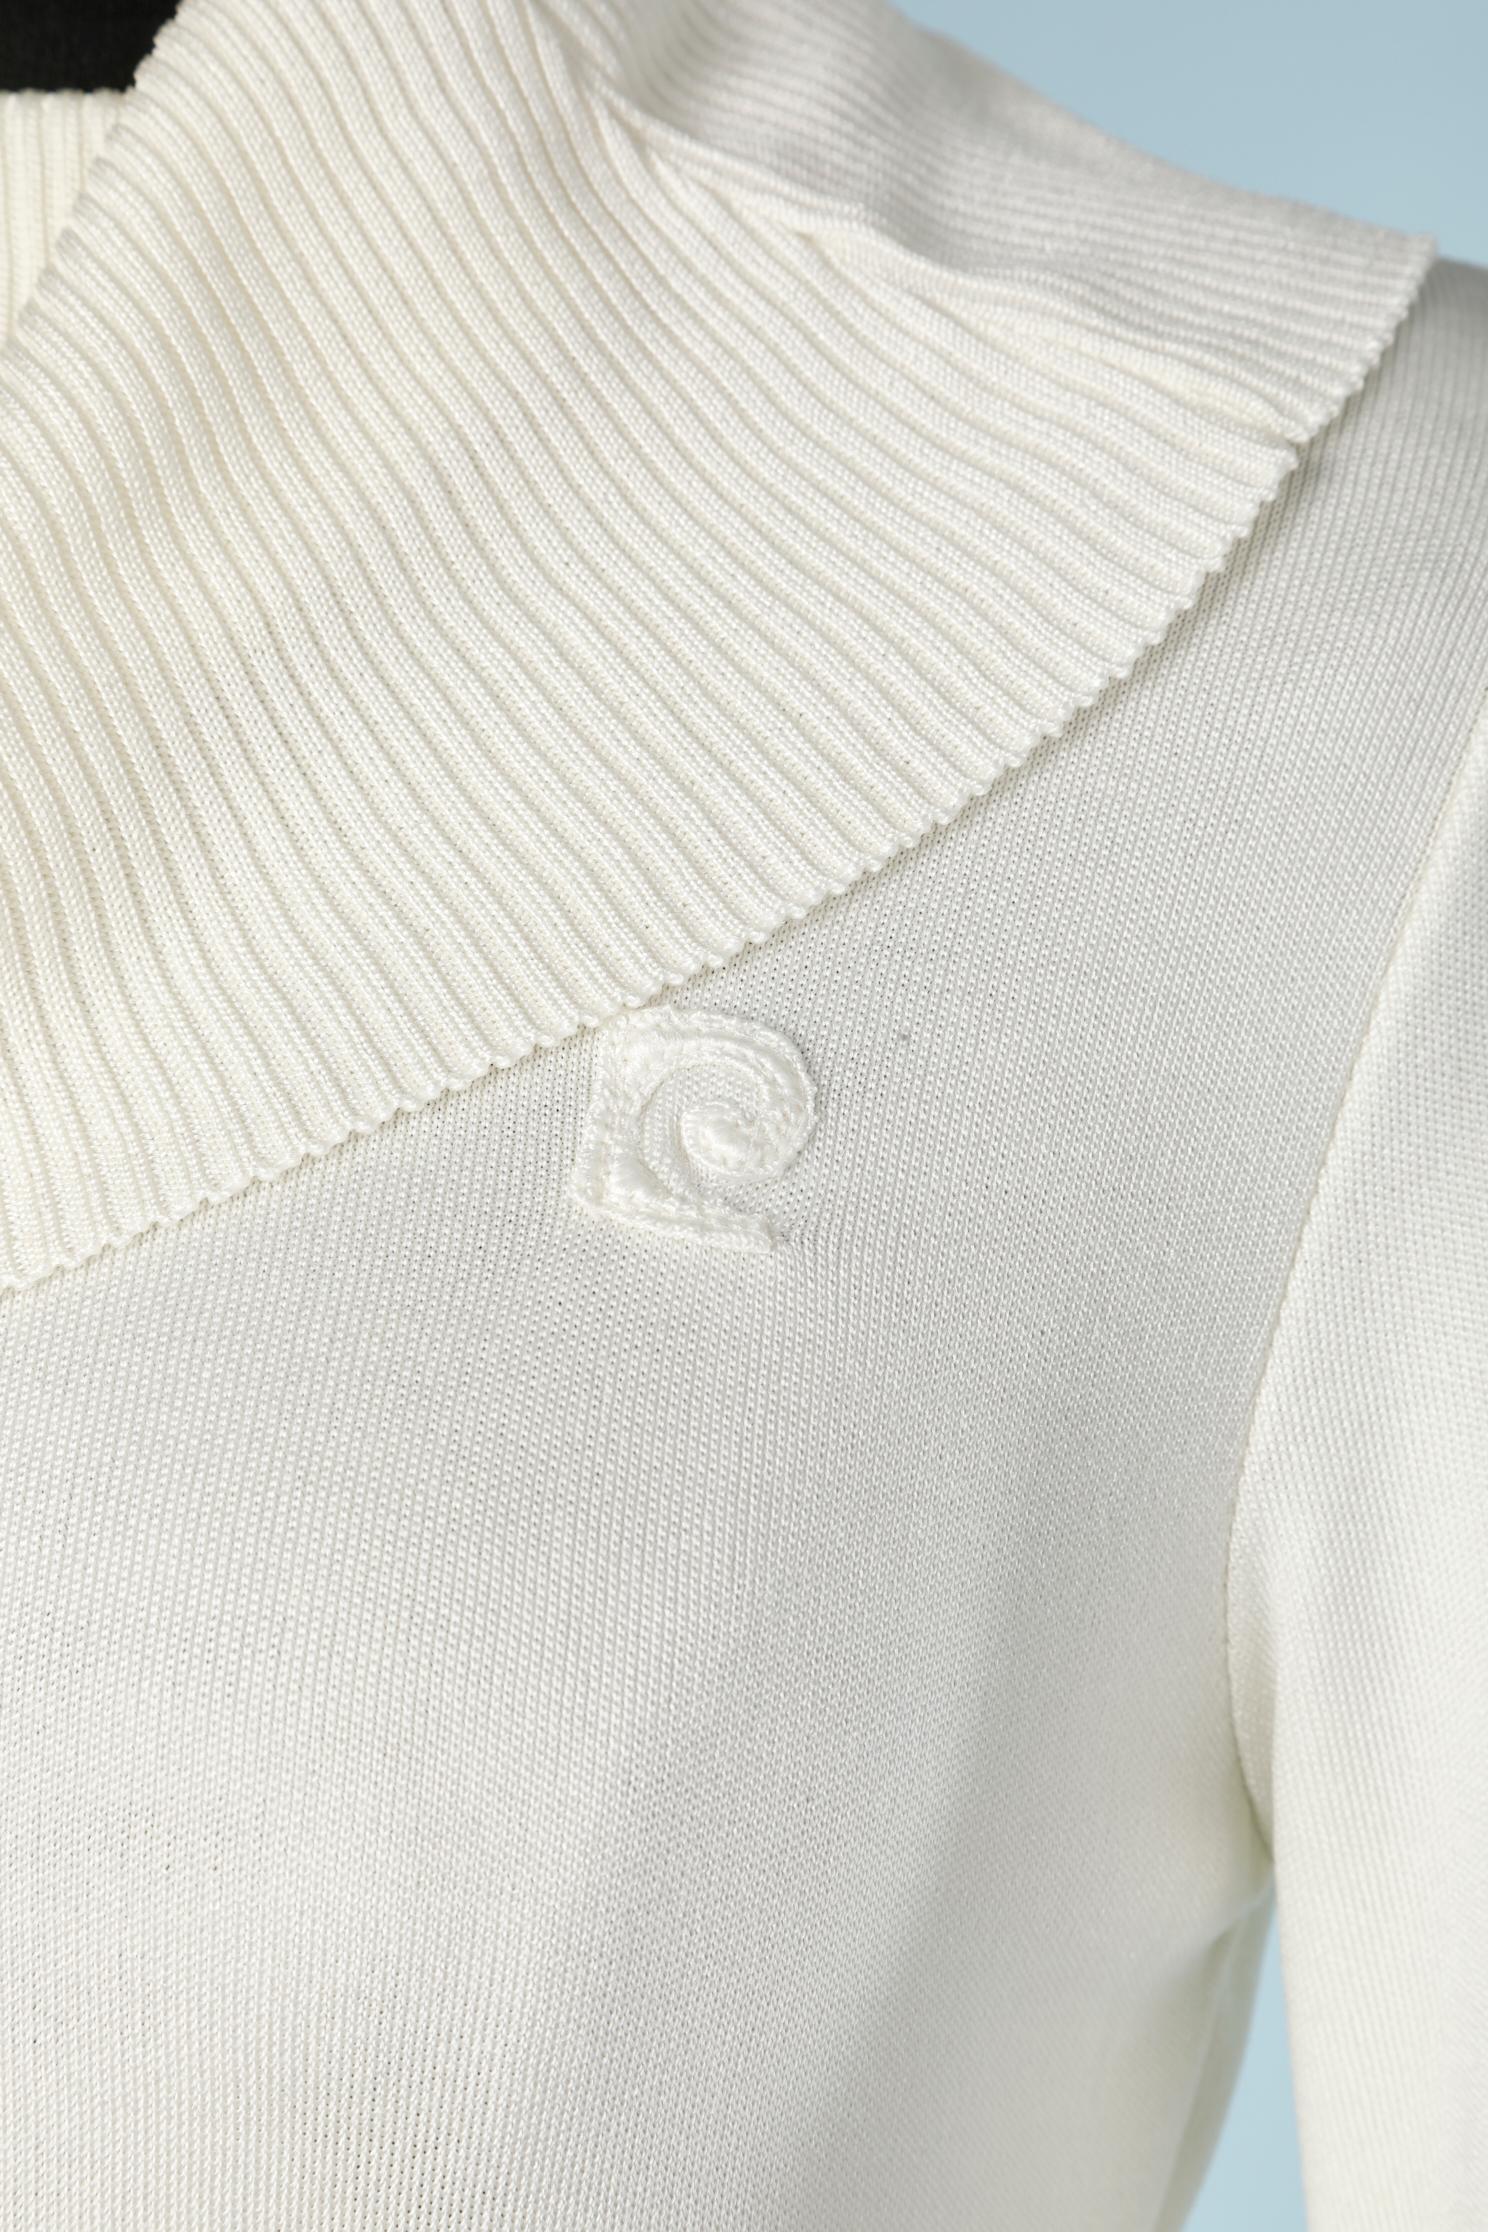 Weißer Pullover mit Rollkragen. Kein Stoffetikett, aber wahrscheinlich aus Nylon oder Acryl. 
GRÖSSE S